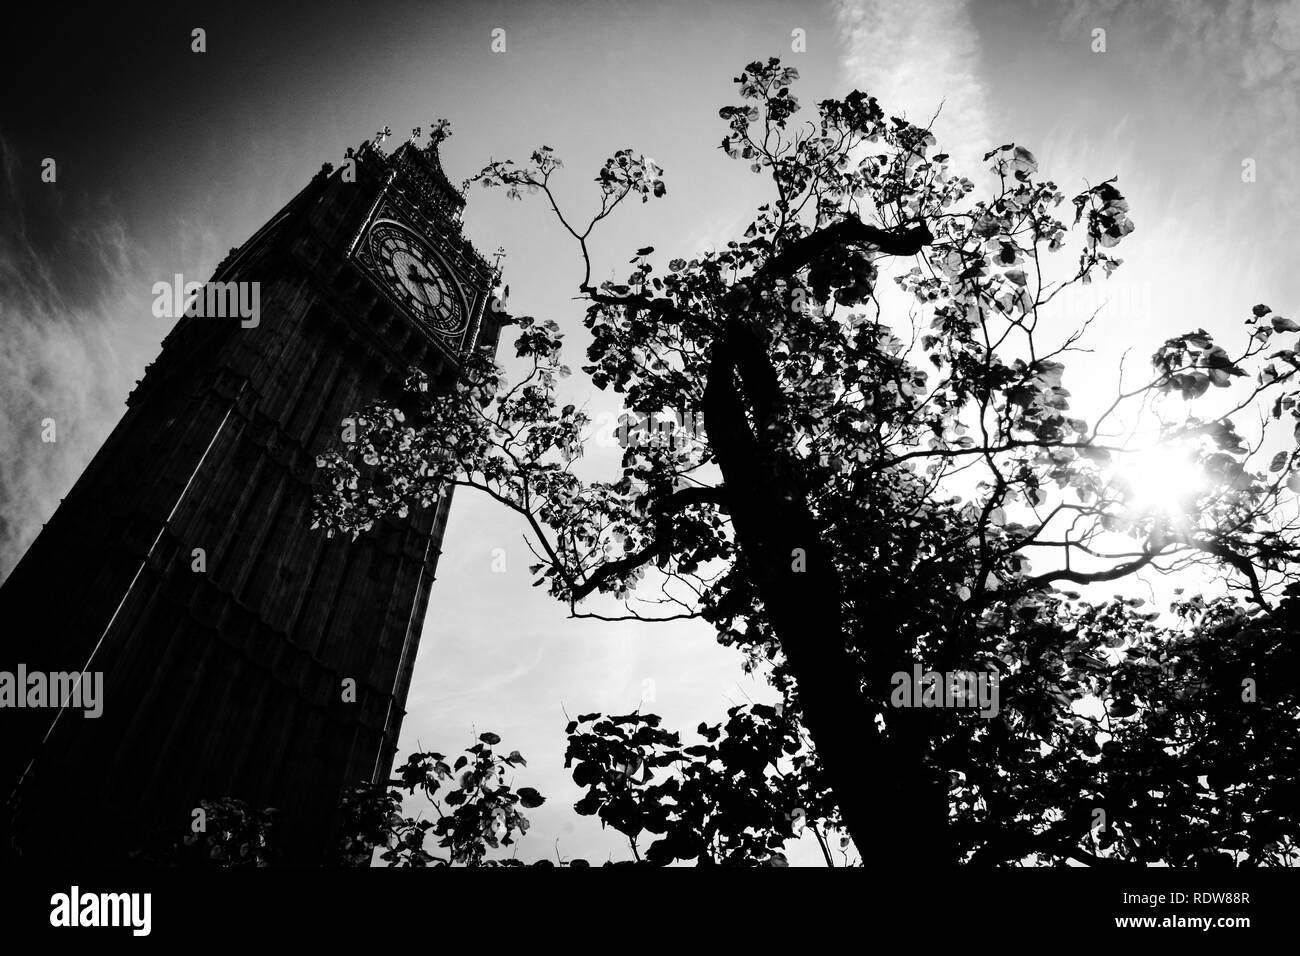 Die Schwarz-Weiß-Fotografie der Elizabeth Tower, allgemein bekannt als Big Ben, im Palast von Westminster in London, Vereinigtes Königreich Stockfoto